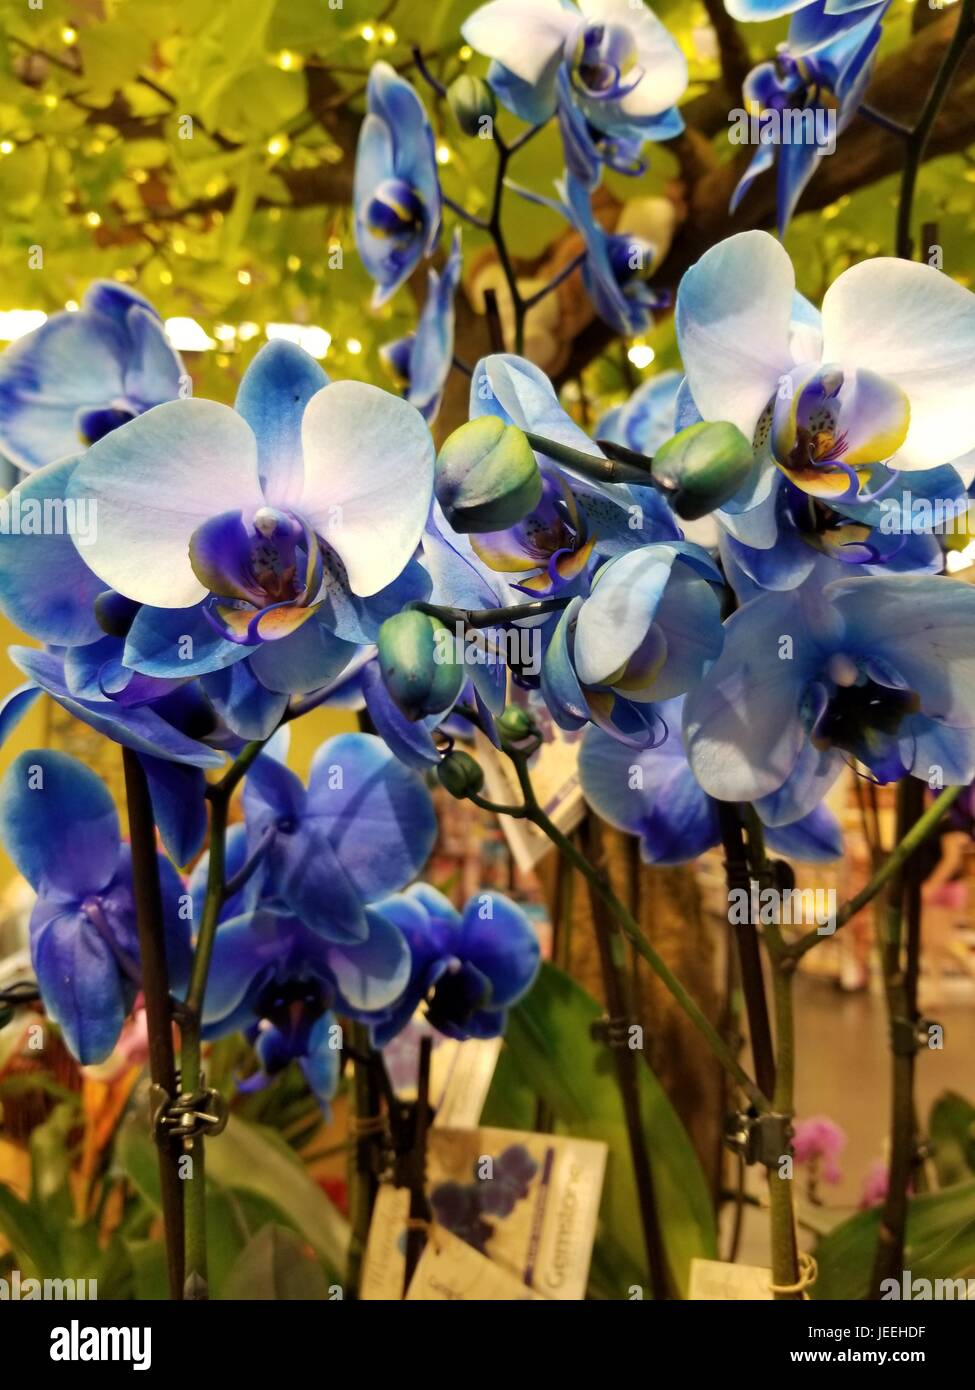 Foto von schönen unbeschnittenen blaue Orchideen in einer natürlichen Umgebung, bringen die Vielfalt der blauen Farben, die die Klammer dieser Blume geworden sind. Stockfoto